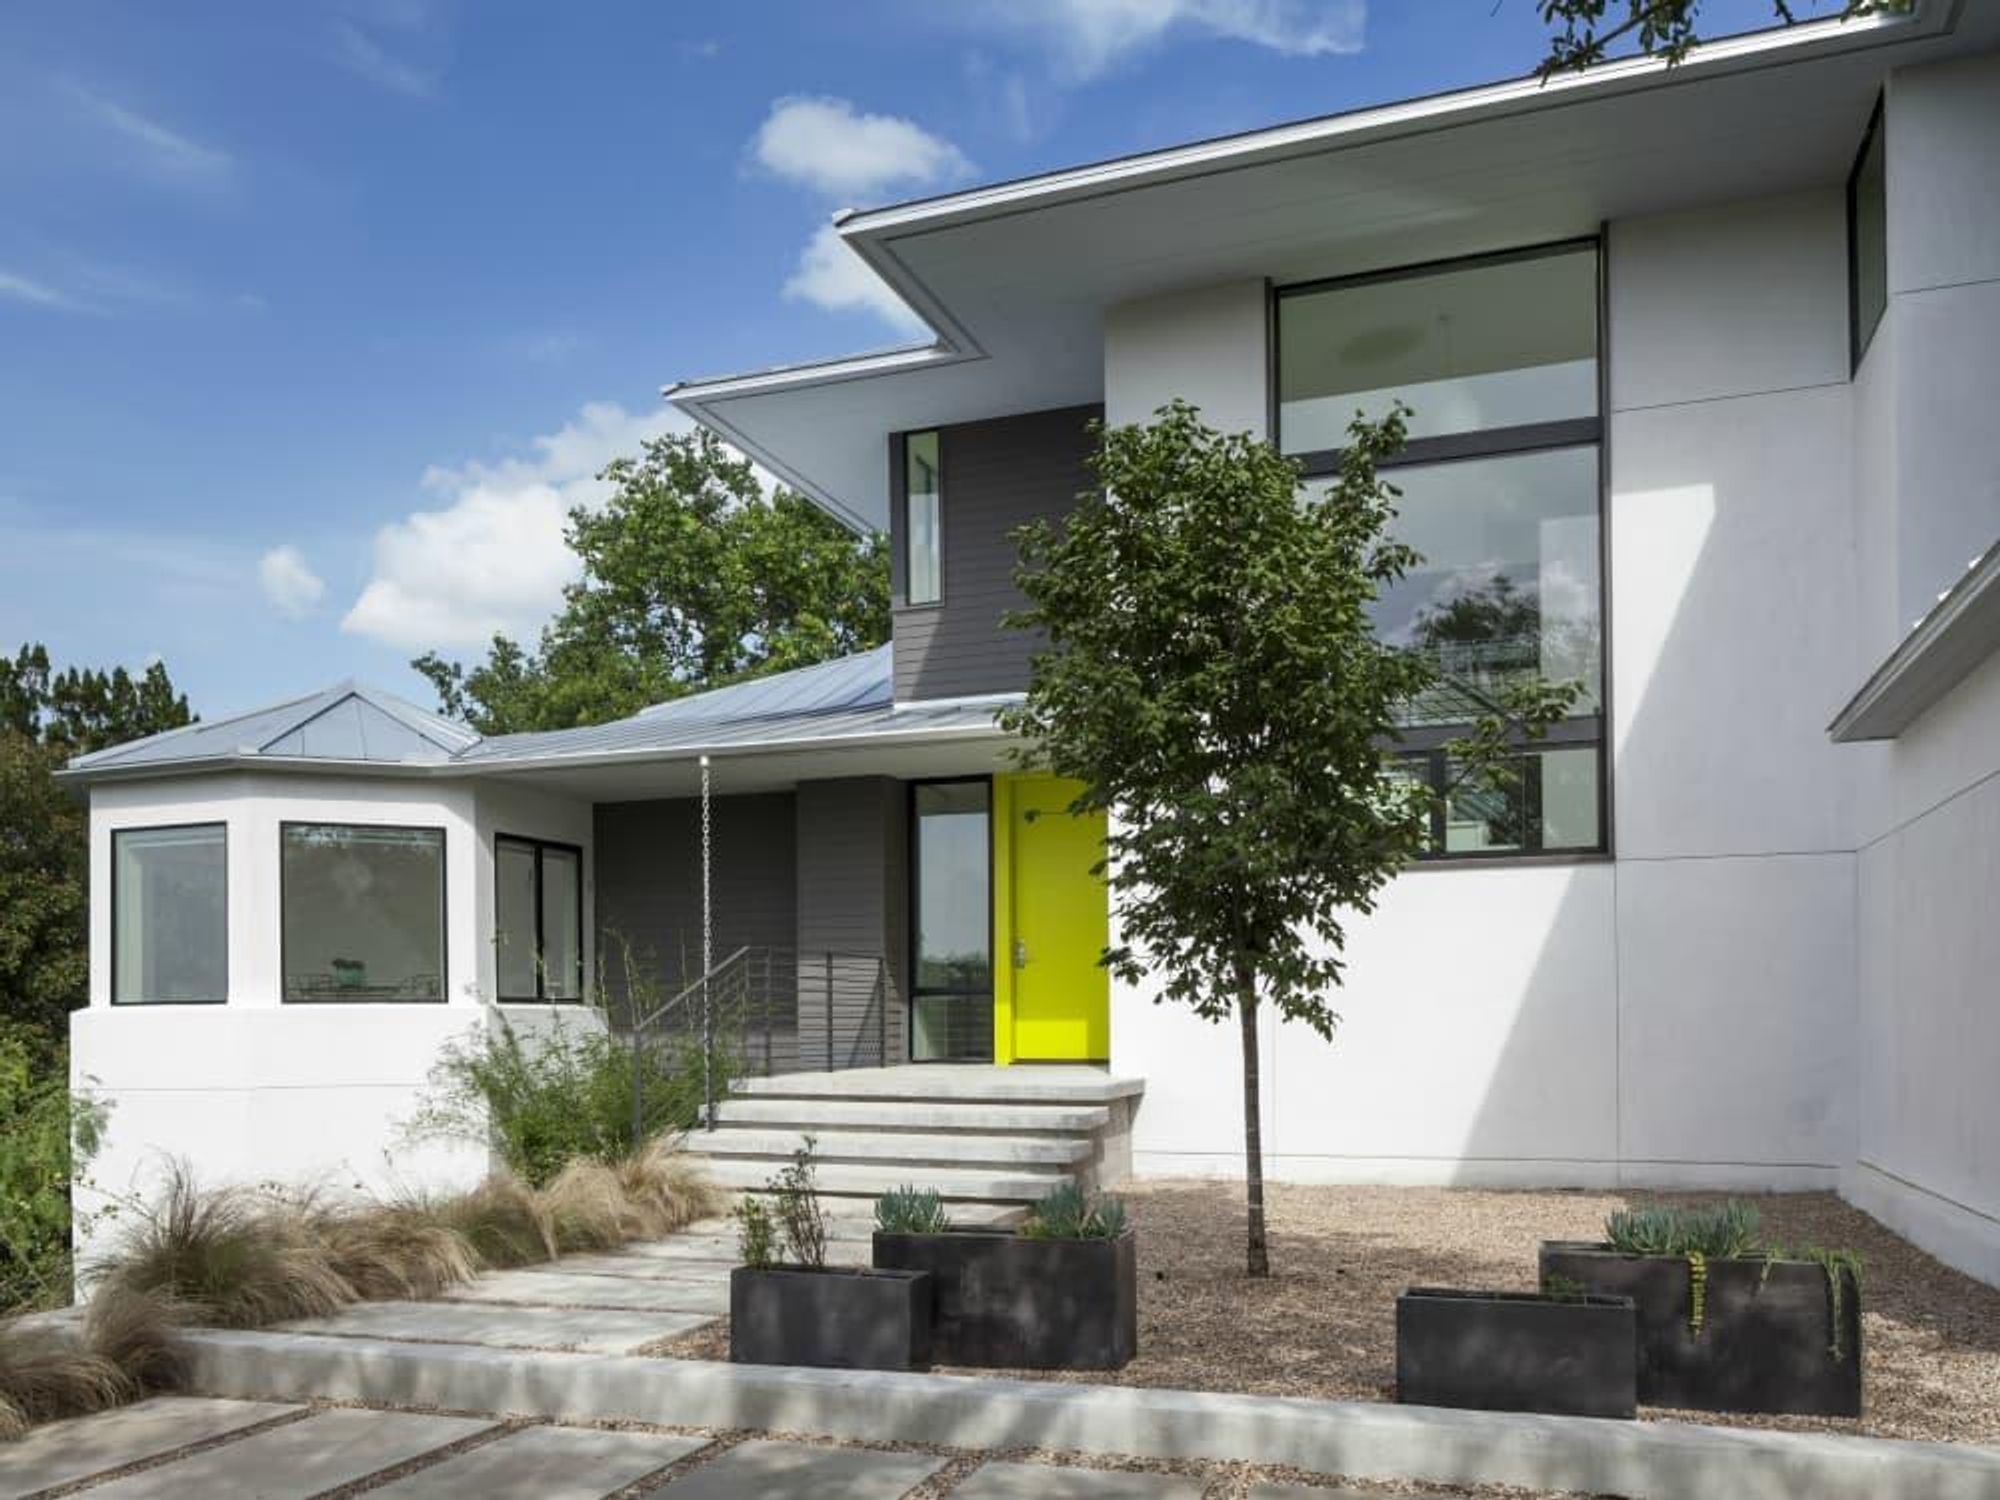 AIA Austin Homes Tour 2015 Arbib Hughey Design exterior - CREDIT ARBIB in caption IF USING